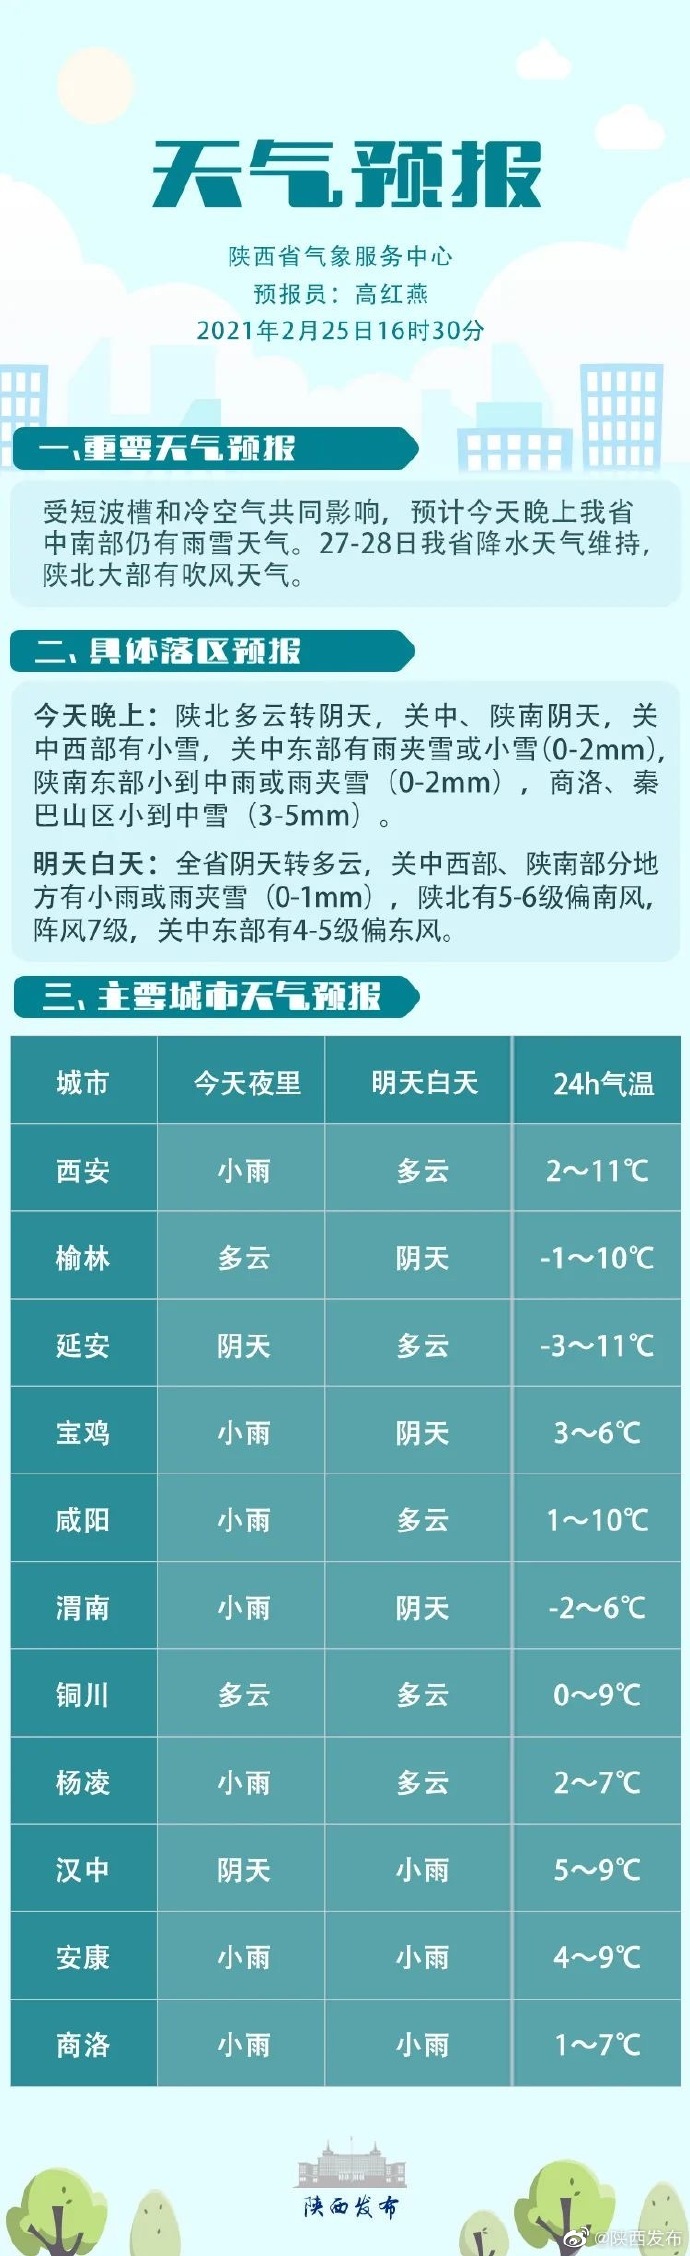 陕西省晚间天气预报 2021年2月25日17时发布 今天晚上：陕北多云转阴天，关中、陕南阴天